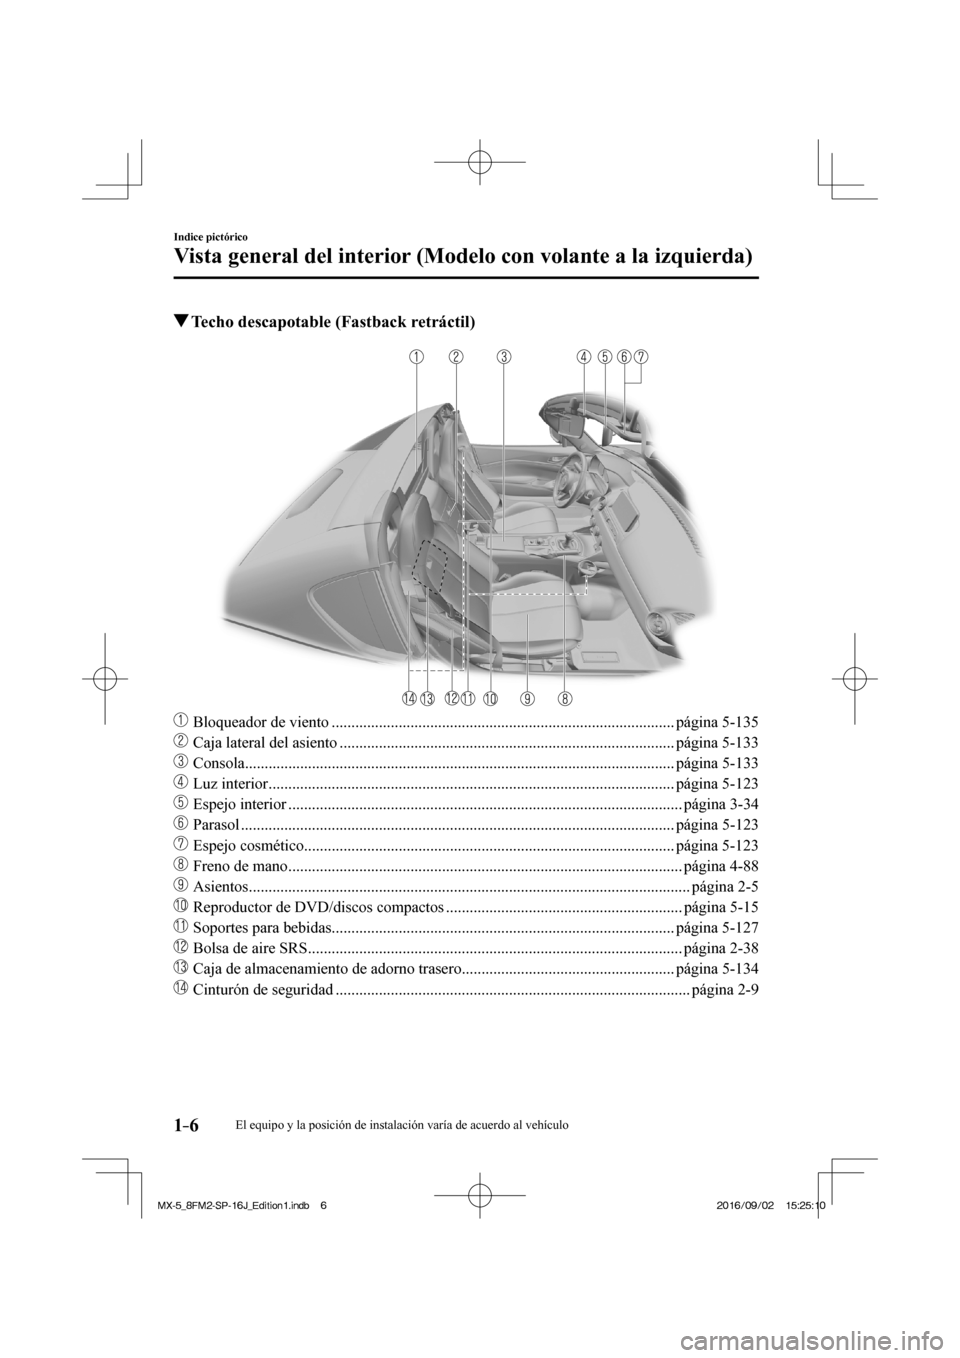 MAZDA MODEL MX-5 2018  Manual del propietario (in Spanish) 1–6
Indice pictórico
Vista general del interior (Modelo con volante a la izquierda)
           Techo descapotable (Fastback retráctil)
    
���
  Bloqueador de viento ..........................